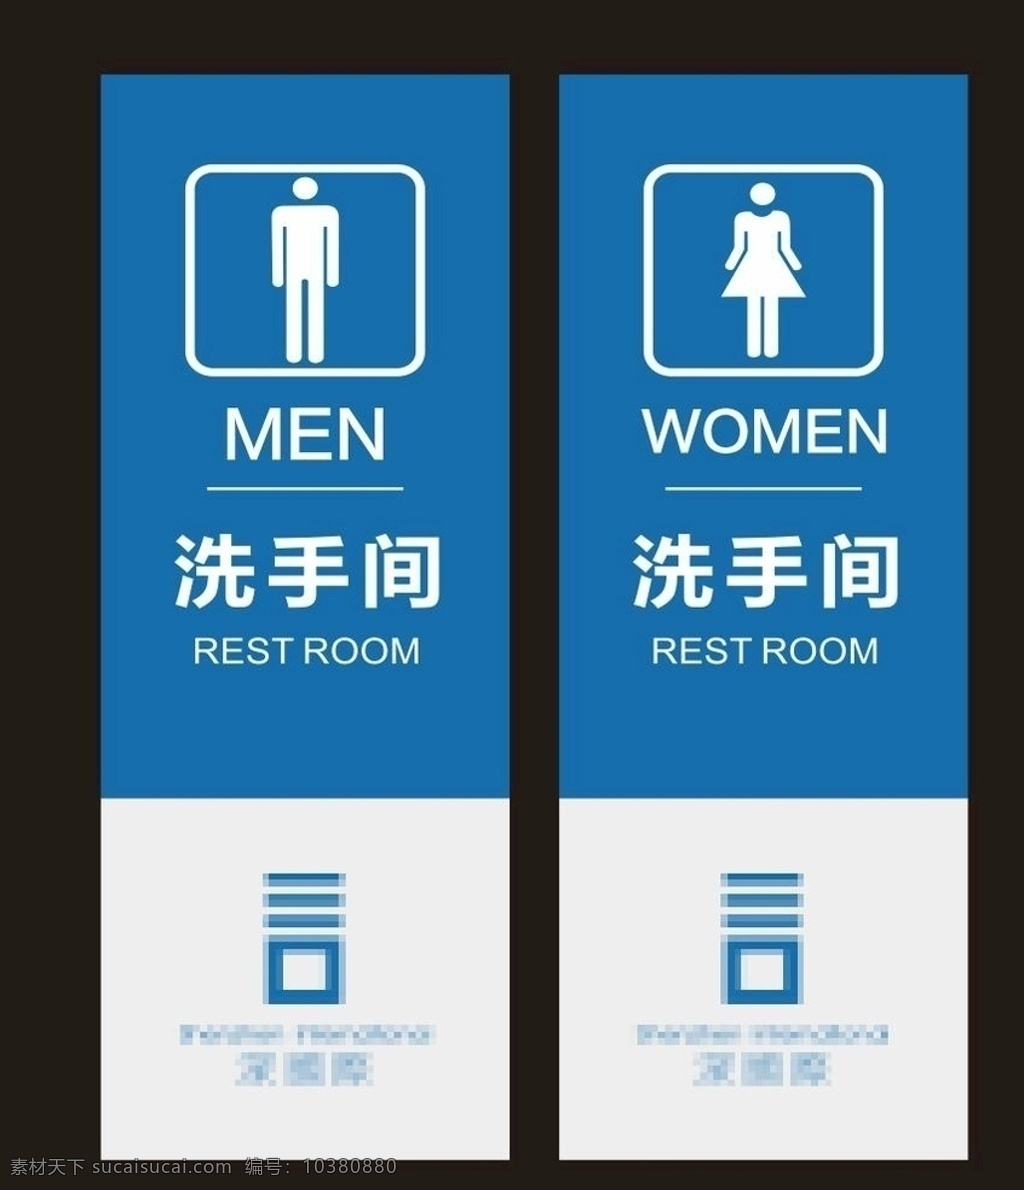 洗手间标识牌 男洗手间 女洗手间 男女洗手间 厕所 洗手间标志 洗手间标识 男女卫生间 男卫生间 女卫生间 洗手间 简洁 公共标识 告示牌